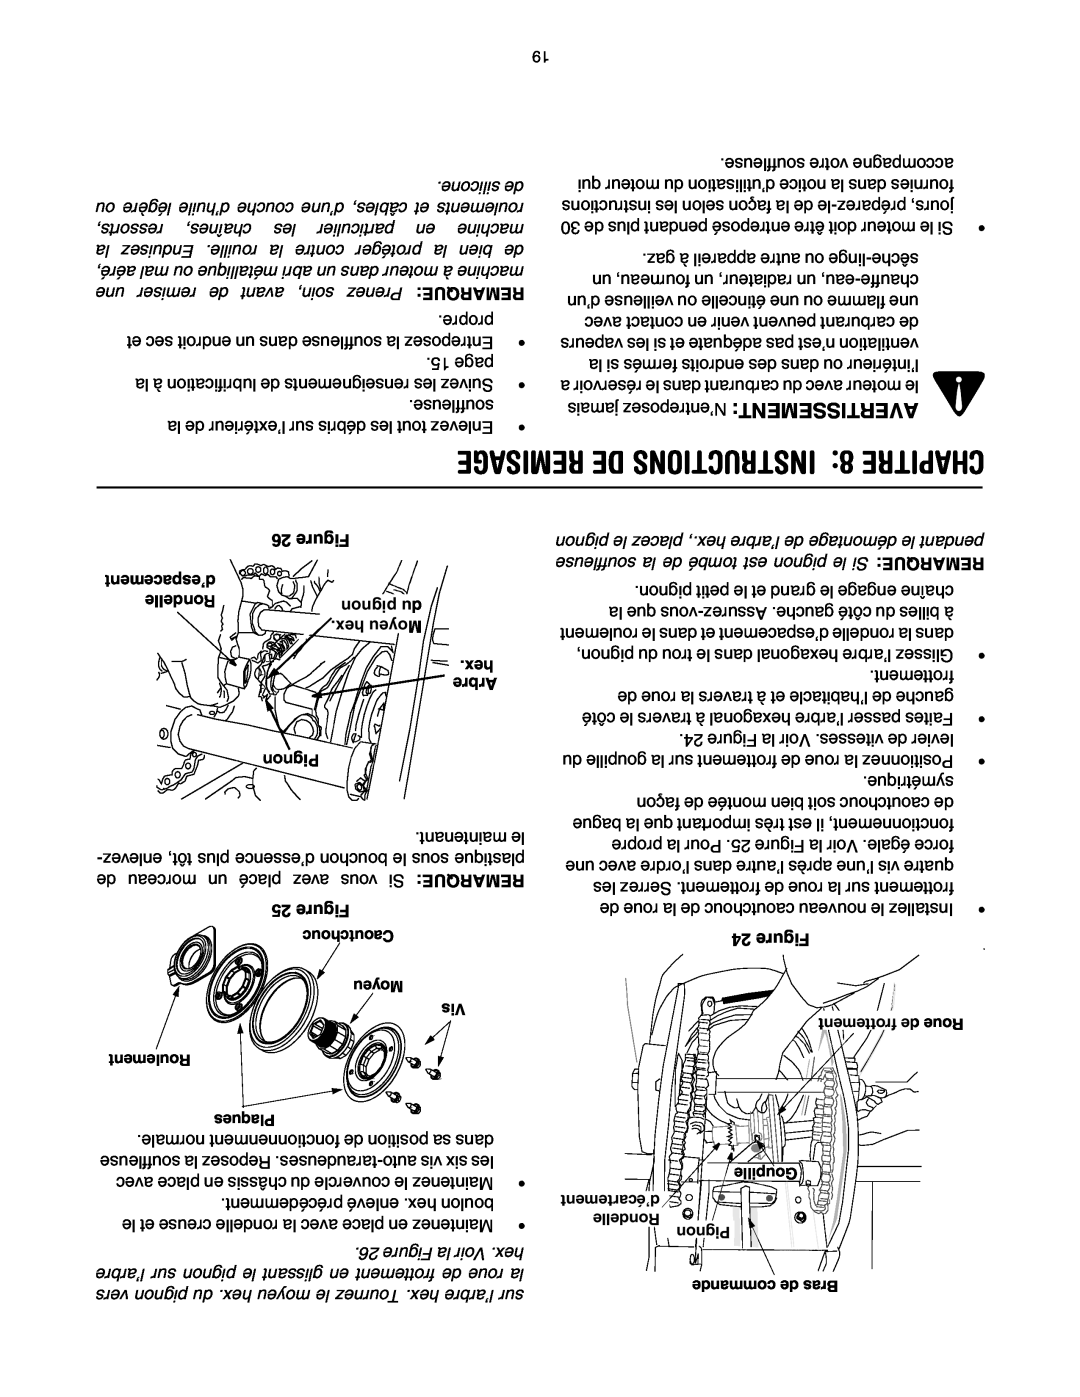 Yard-Man OGST-2806 manual REMISAGE DE INSTRUCTIONS 8 CHAPITRE, np du, hex Moyeu, Arbre, Pignon, Figure 